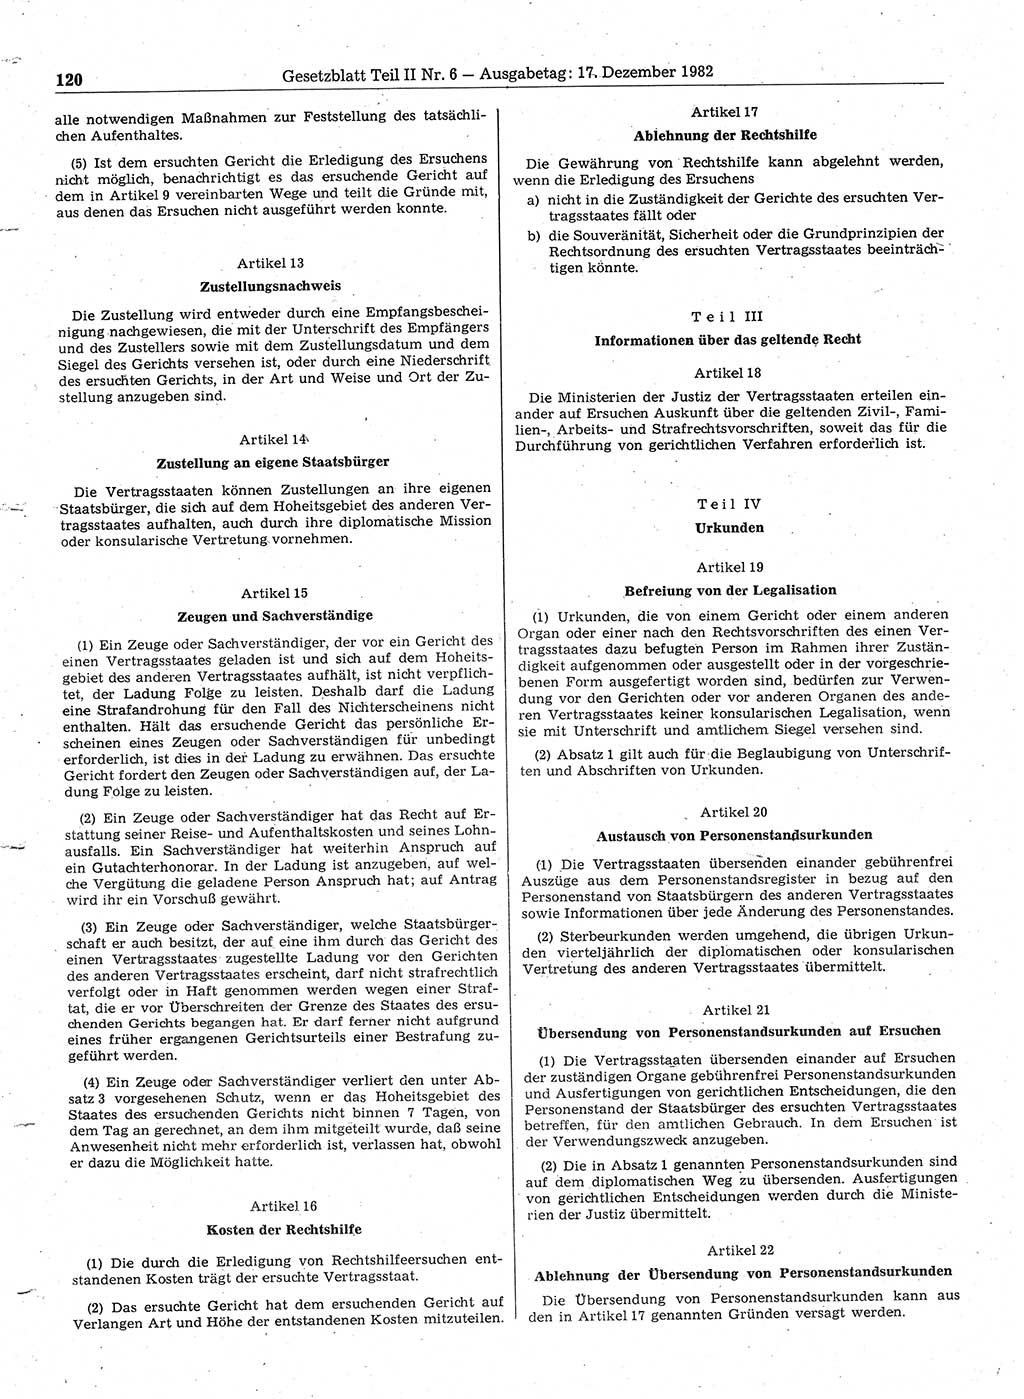 Gesetzblatt (GBl.) der Deutschen Demokratischen Republik (DDR) Teil ⅠⅠ 1982, Seite 120 (GBl. DDR ⅠⅠ 1982, S. 120)